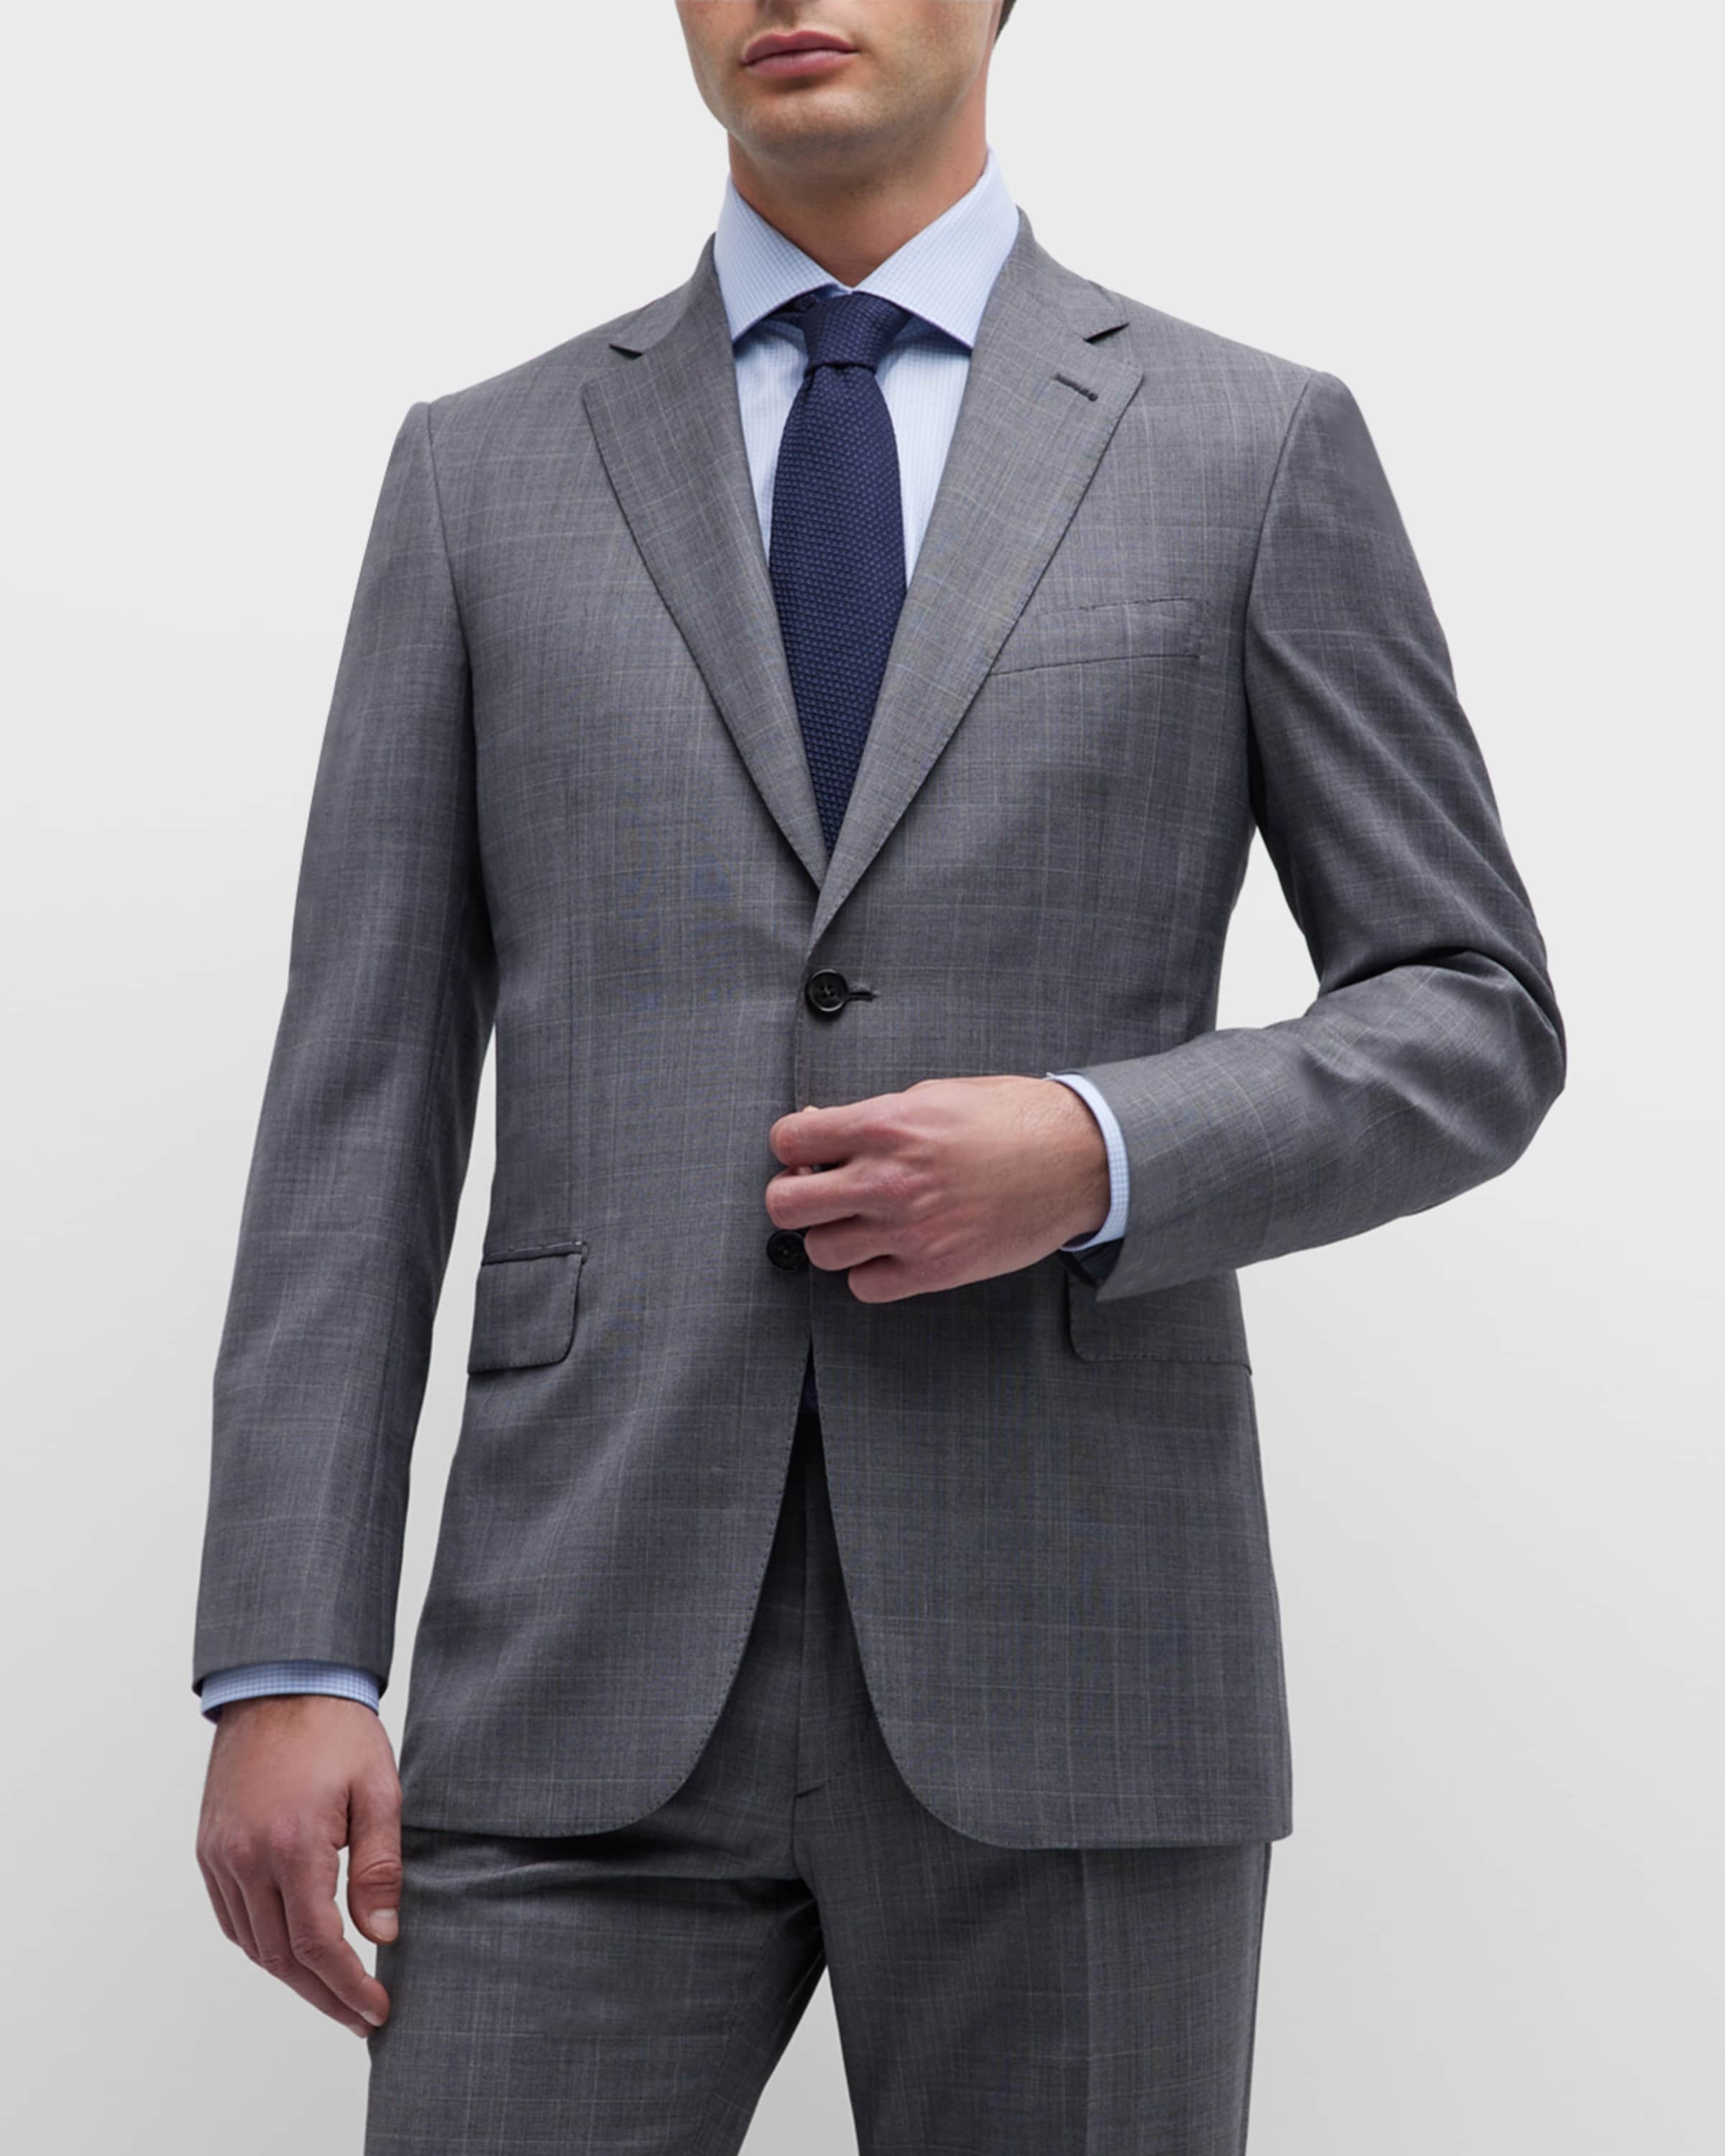 Men's Plaid Wool Suit - 3